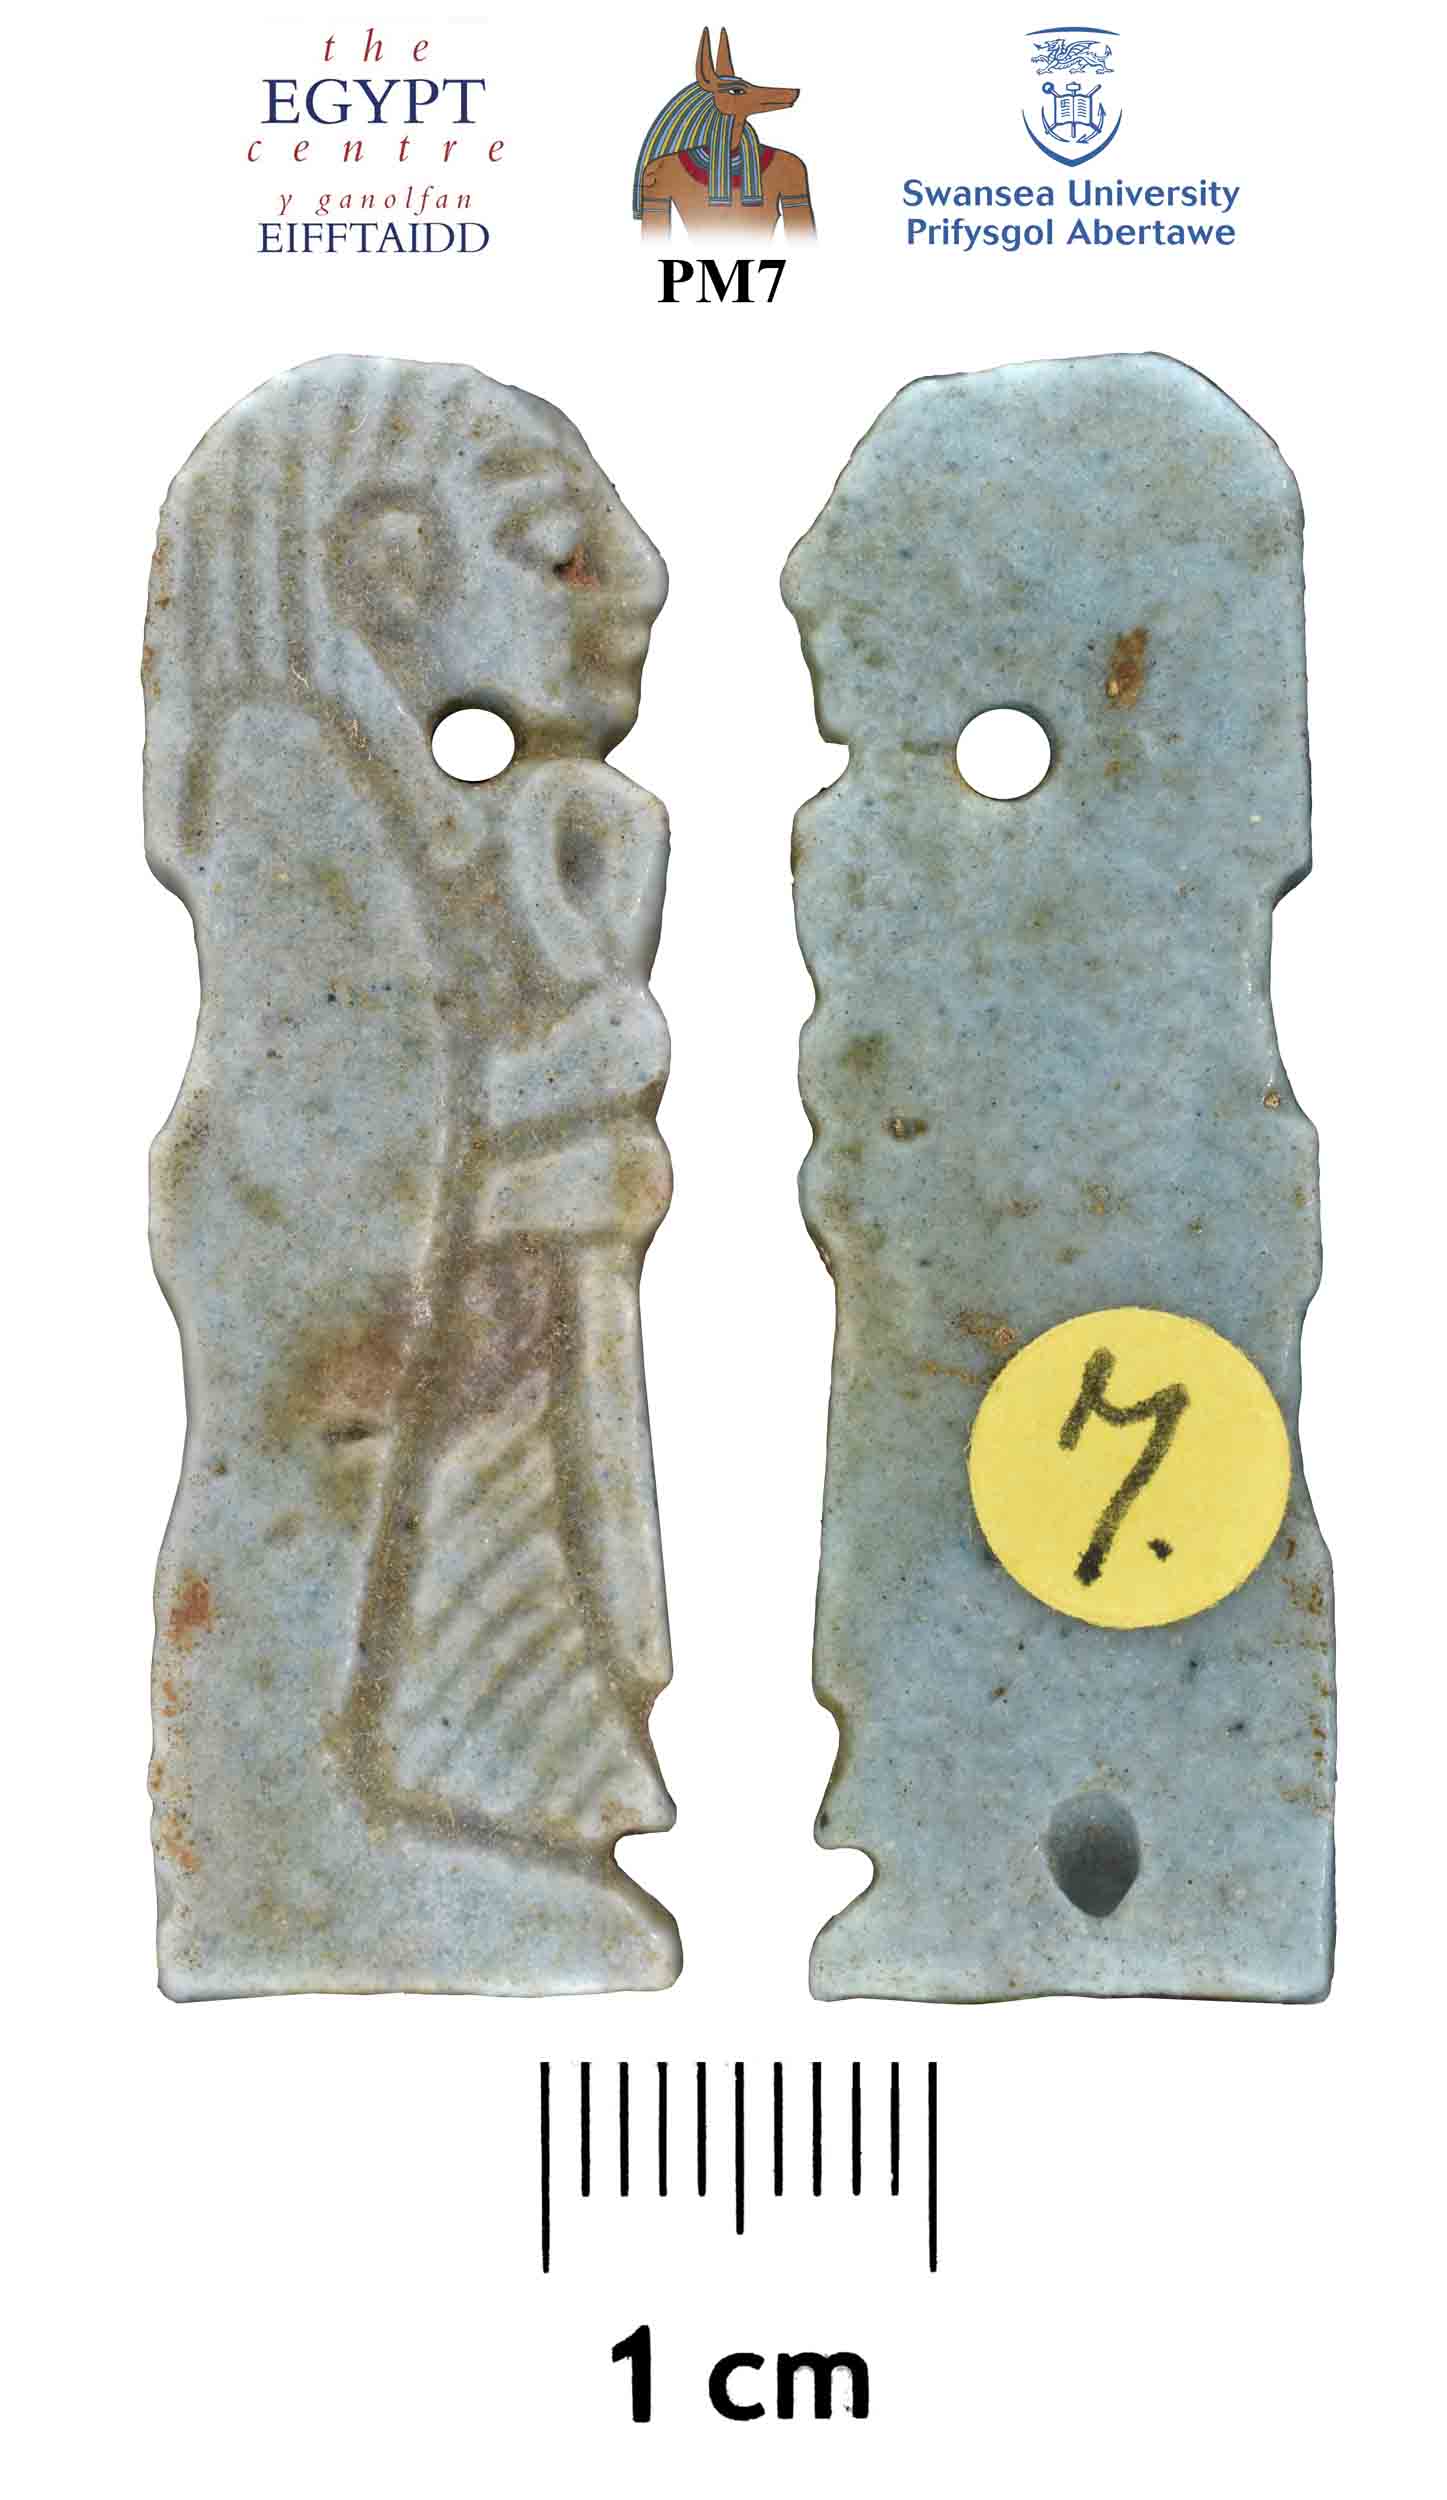 Image for: Amulet of Imsety